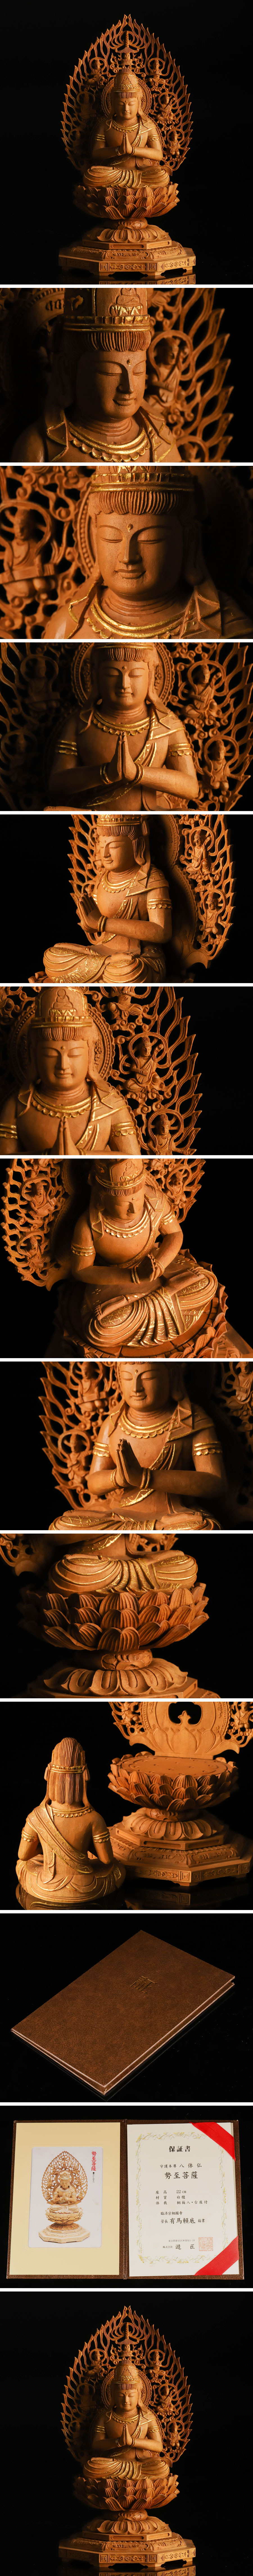 最安値好評仏教美術 有馬賴底 白檀 木彫 勢至菩薩像 保証書付 TF382 仏像